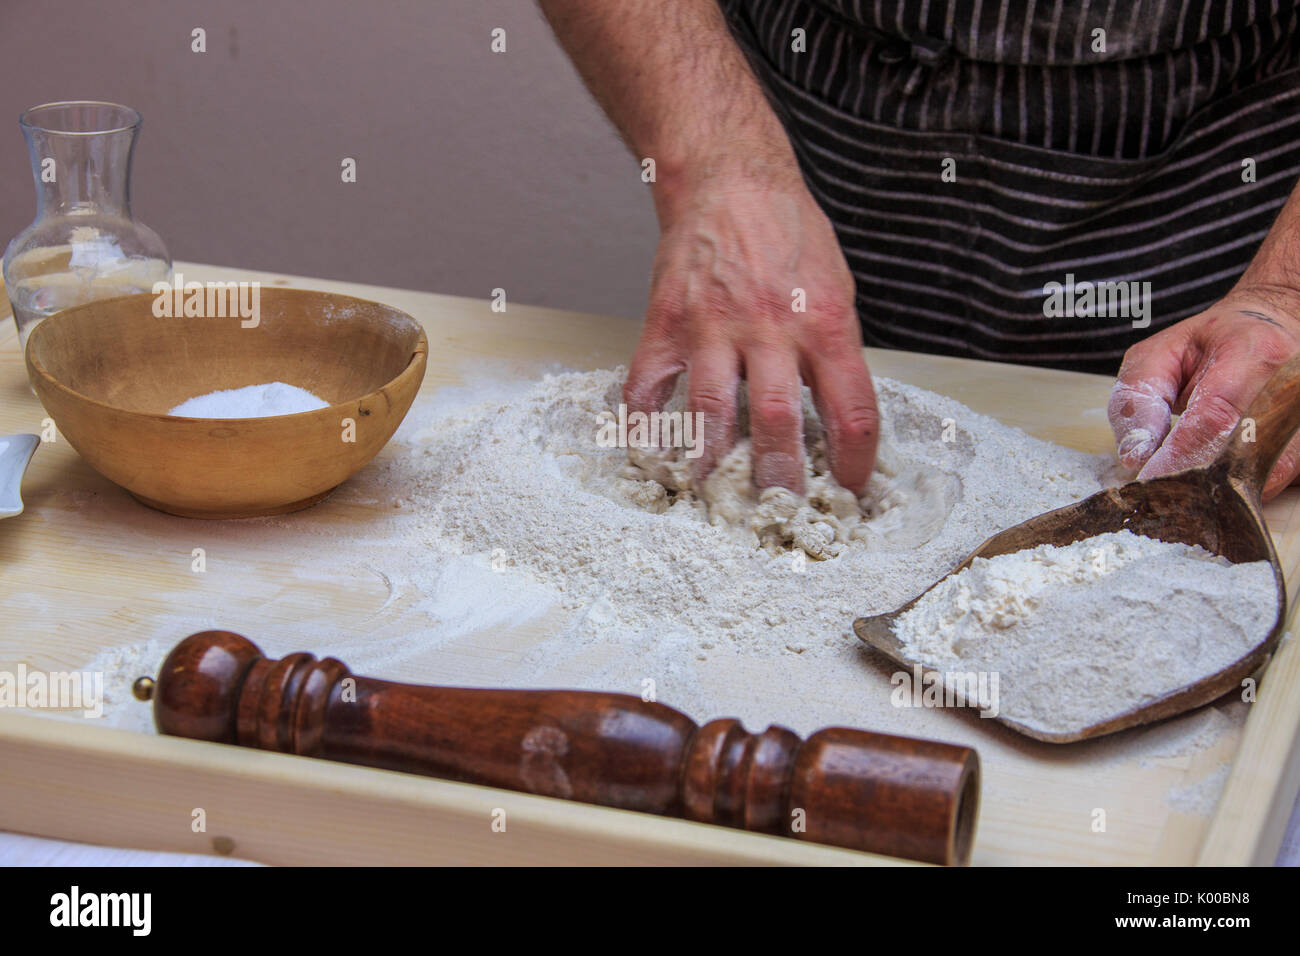 Cook pétrissez la farine et l'eau pour préparer Pizzoccheri. La Lombardie. L'Italie. L'Europe Banque D'Images